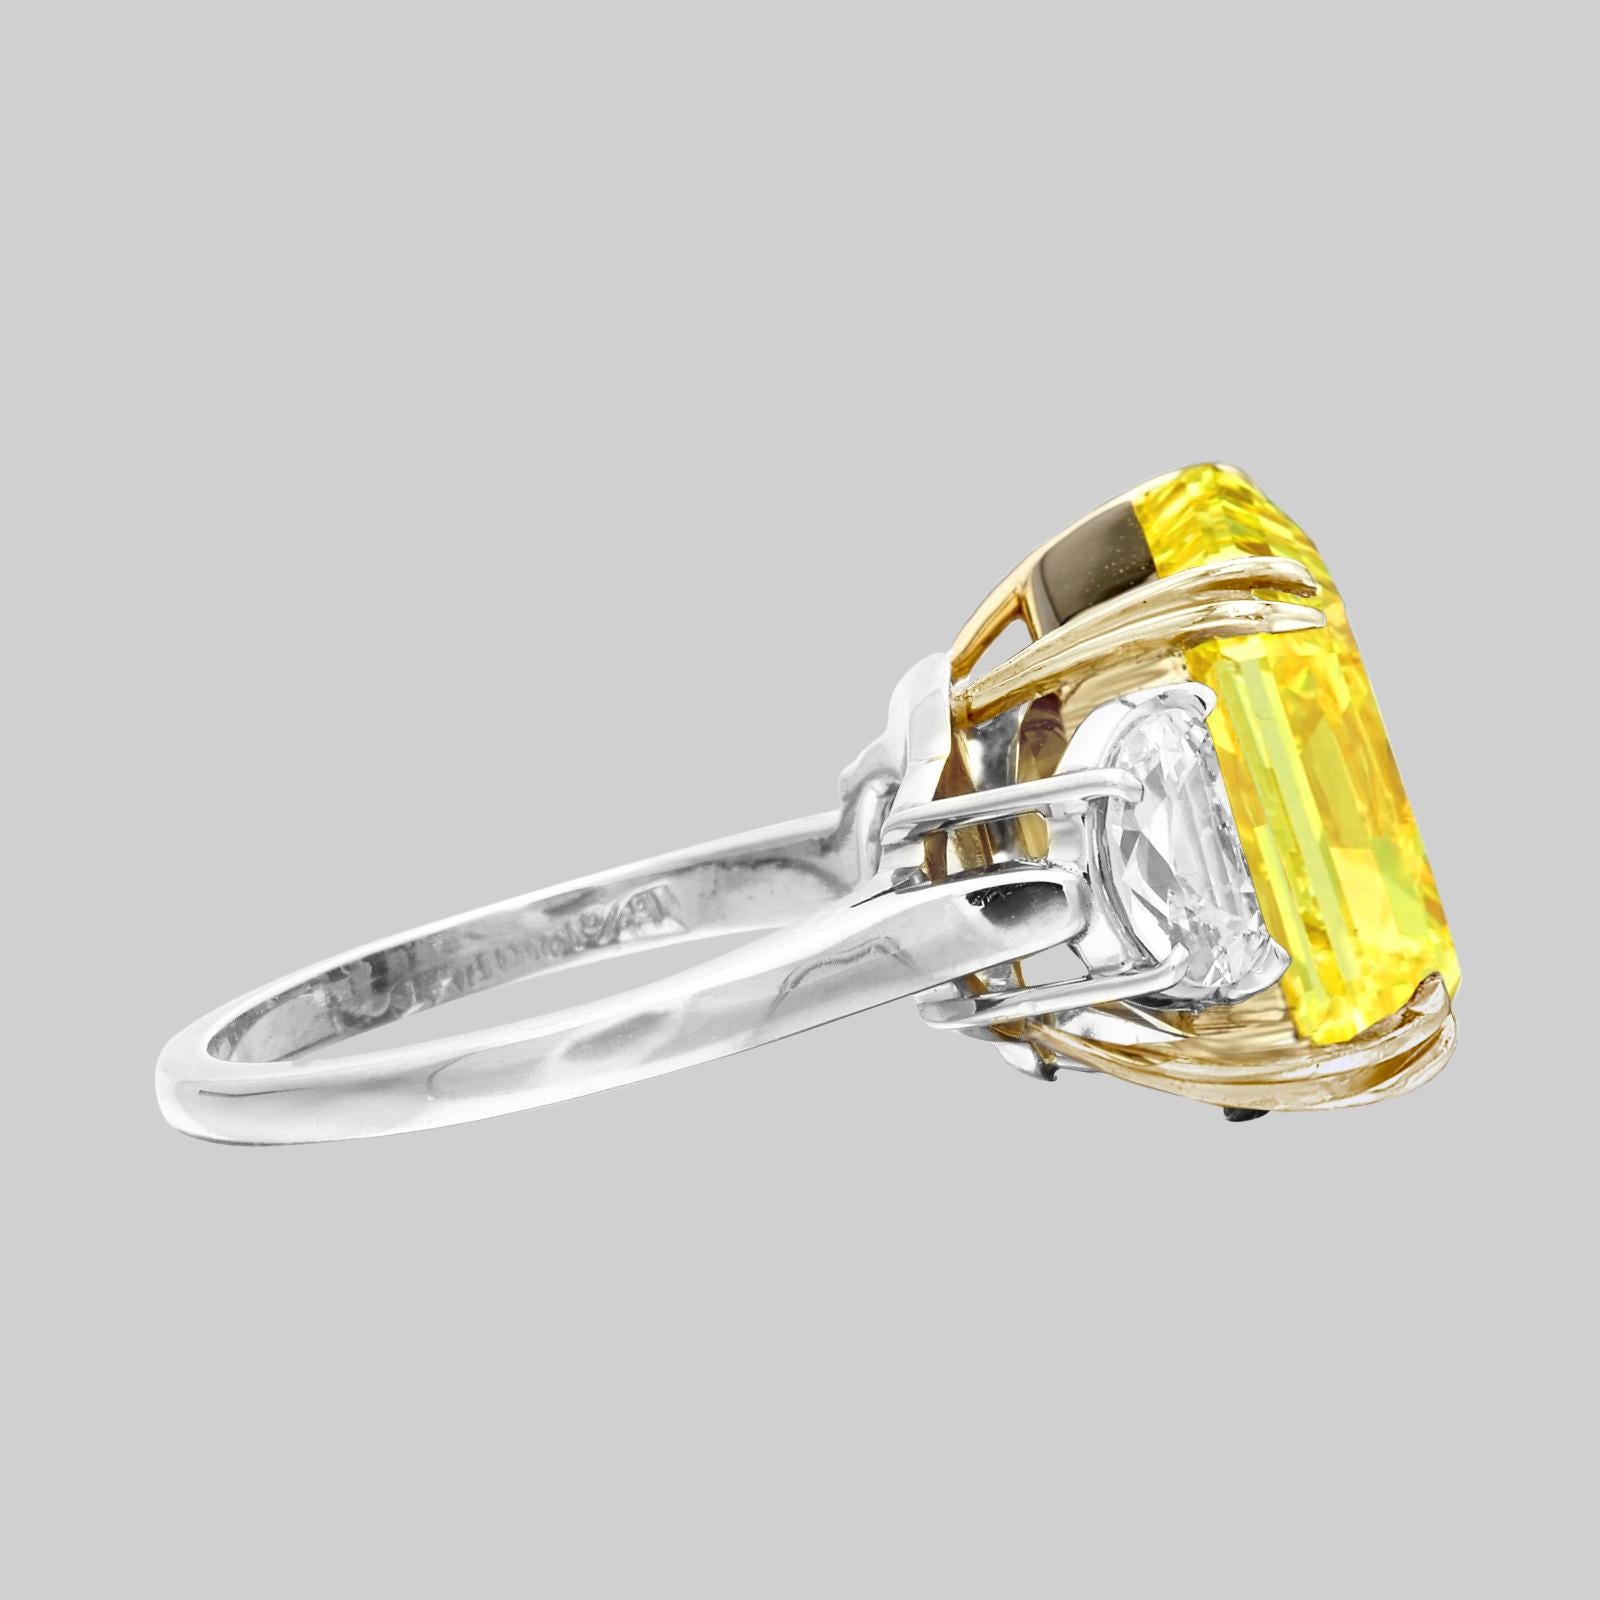 Une bague importante composée d'un diamant radiant pesant 4.10 carats. 
Le diamant est certifié par le GIA, qui atteste qu'il est de couleur jaune fantaisie et d'une pureté sans défaut interne.
Il est rehaussé de deux diamants en demi-lune de chaque